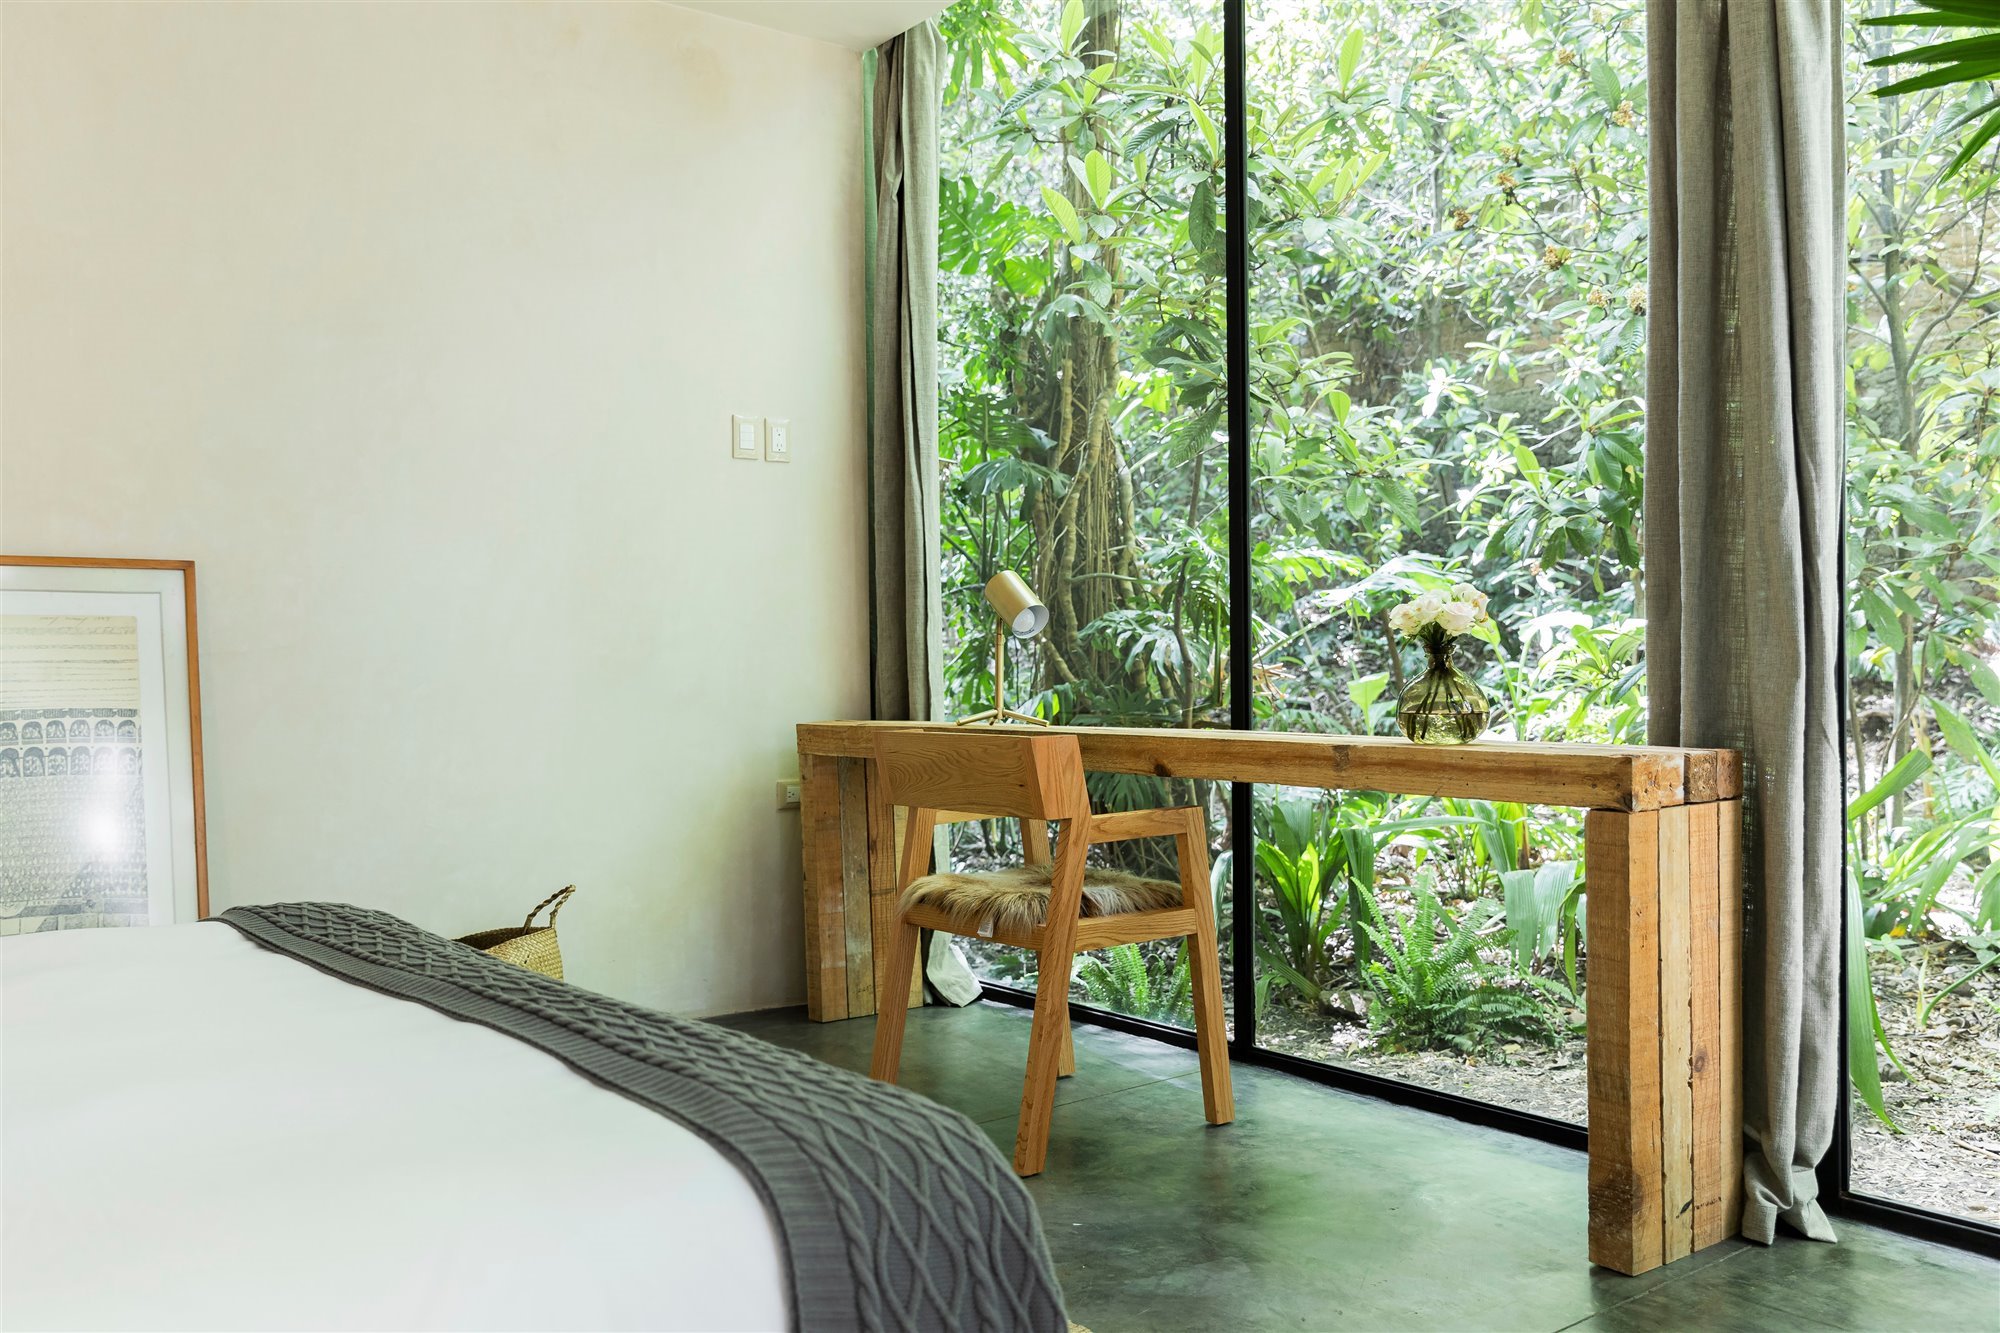 Casa moderna en Mexico rodeada de vegetacion en la selva dormitorio